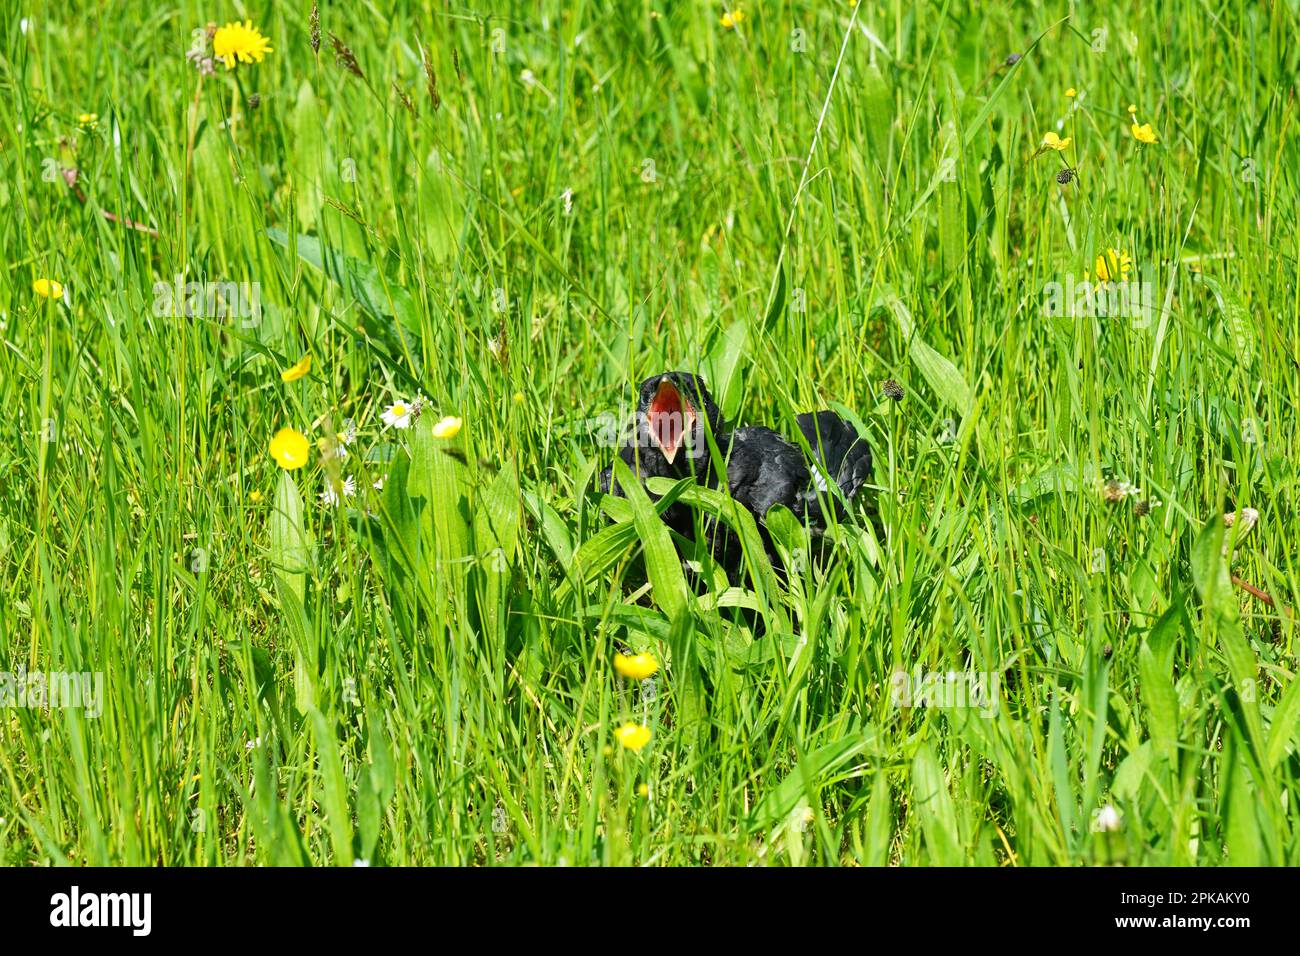 Little hungry screaming bird raven in a meadow, kleiner schreiender Rabe Vogel in einer Wiese in Bayern, Bavaria, Germany Stock Photo